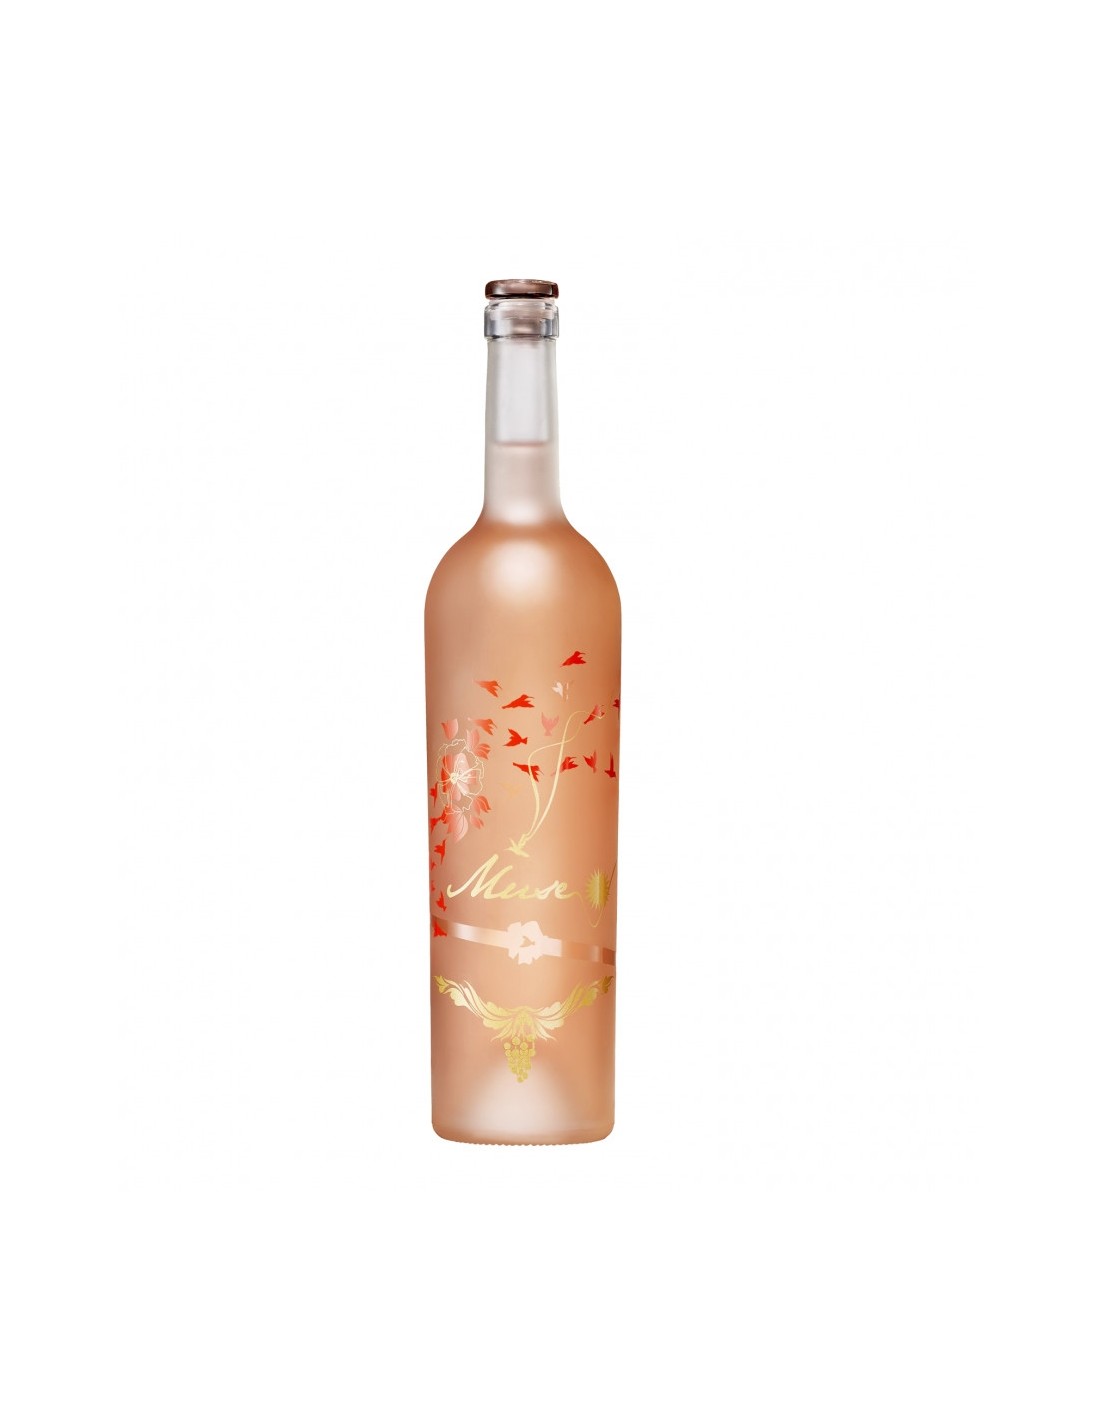 Vin roze sec, Muse Day Recas, 0.75L, 12.5% alc., Romania